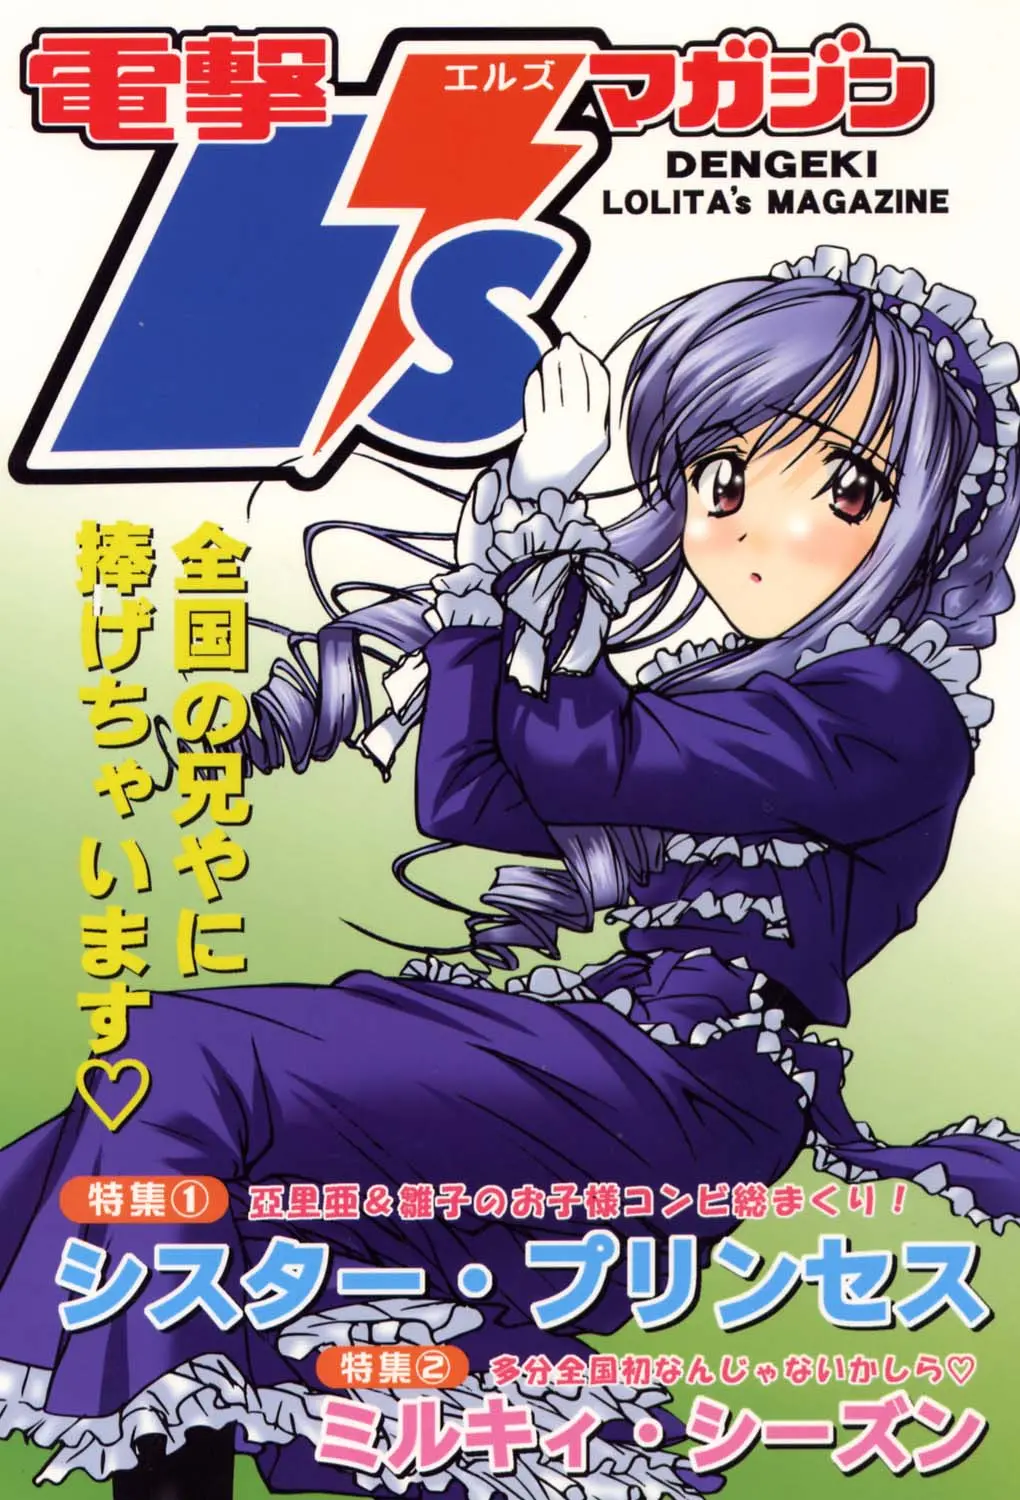 電撃L'sマガジン Dengeki Lolita's Magazine, 日本語